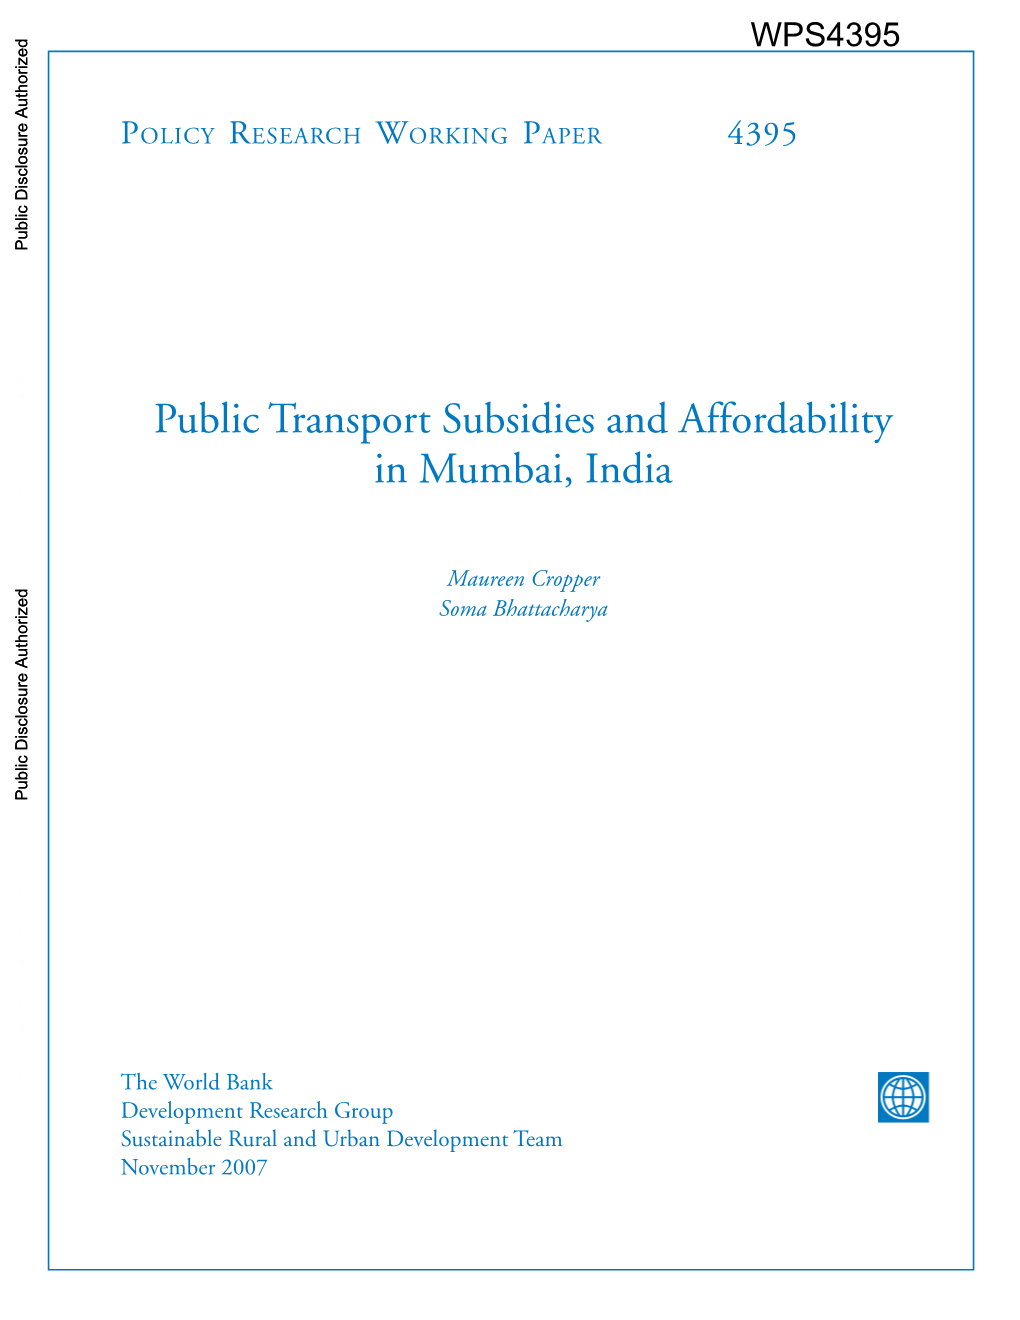 Public Transport Subsidies and Affordability in Mumbai, India Public Disclosure Authorized